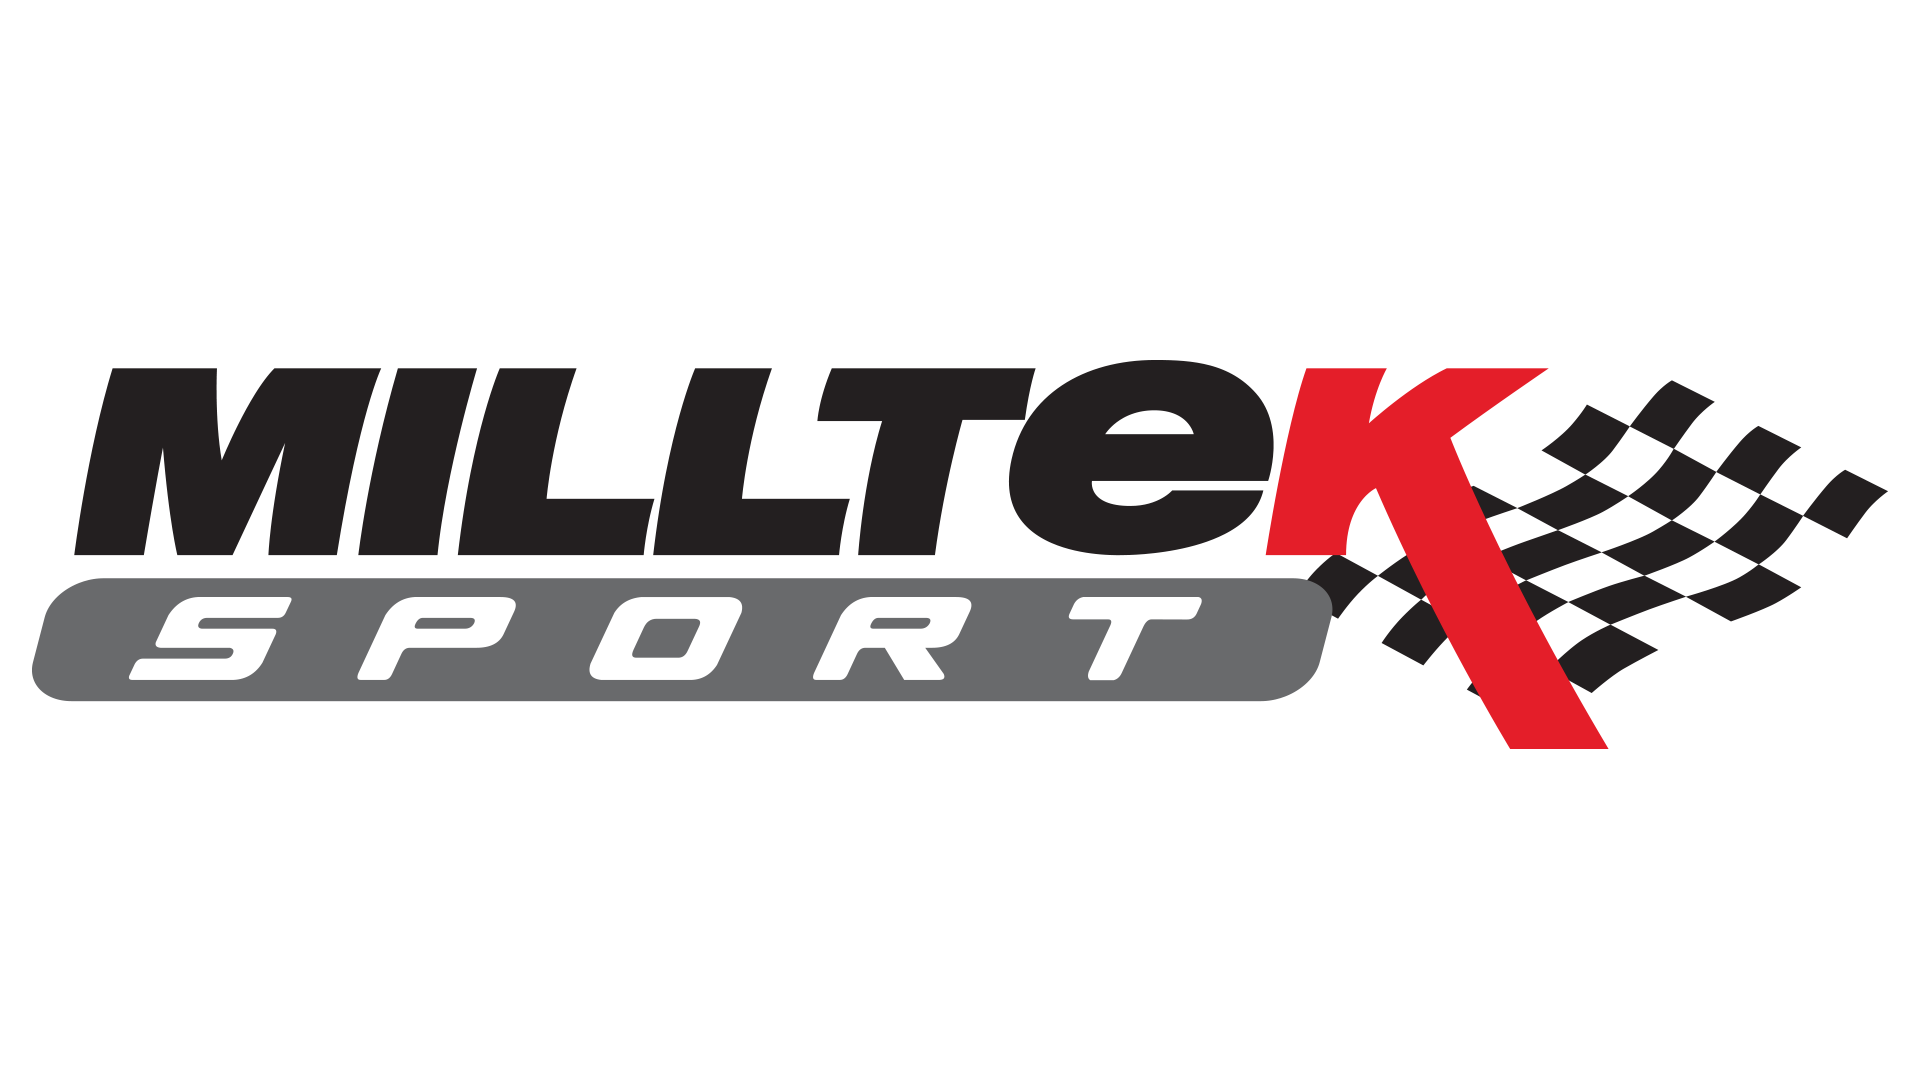 Milltek Logo